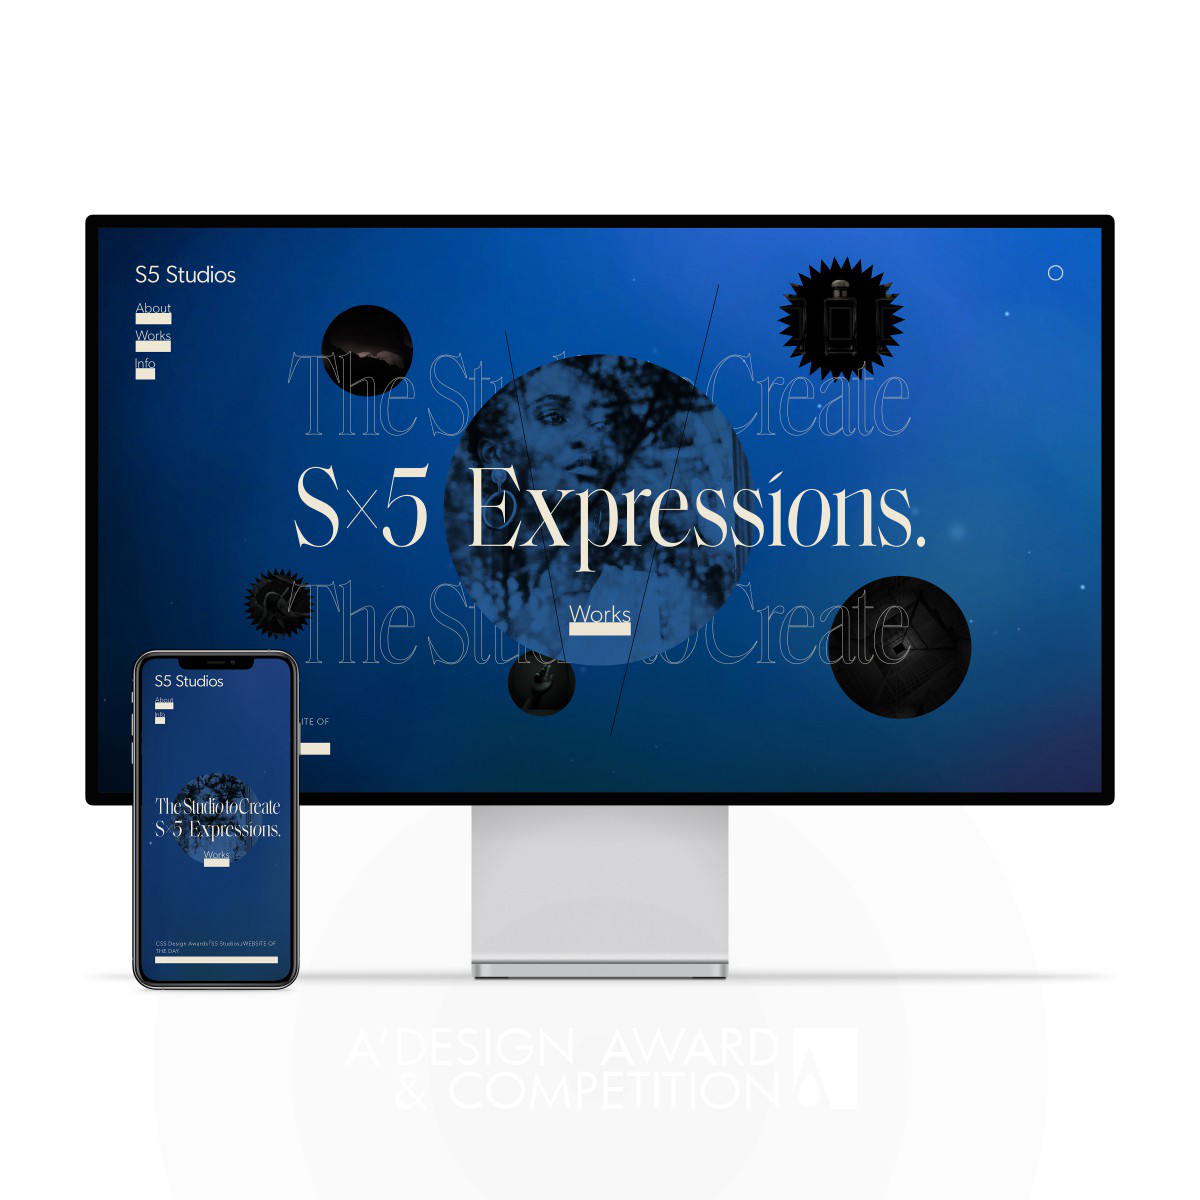 S5 Studios Website